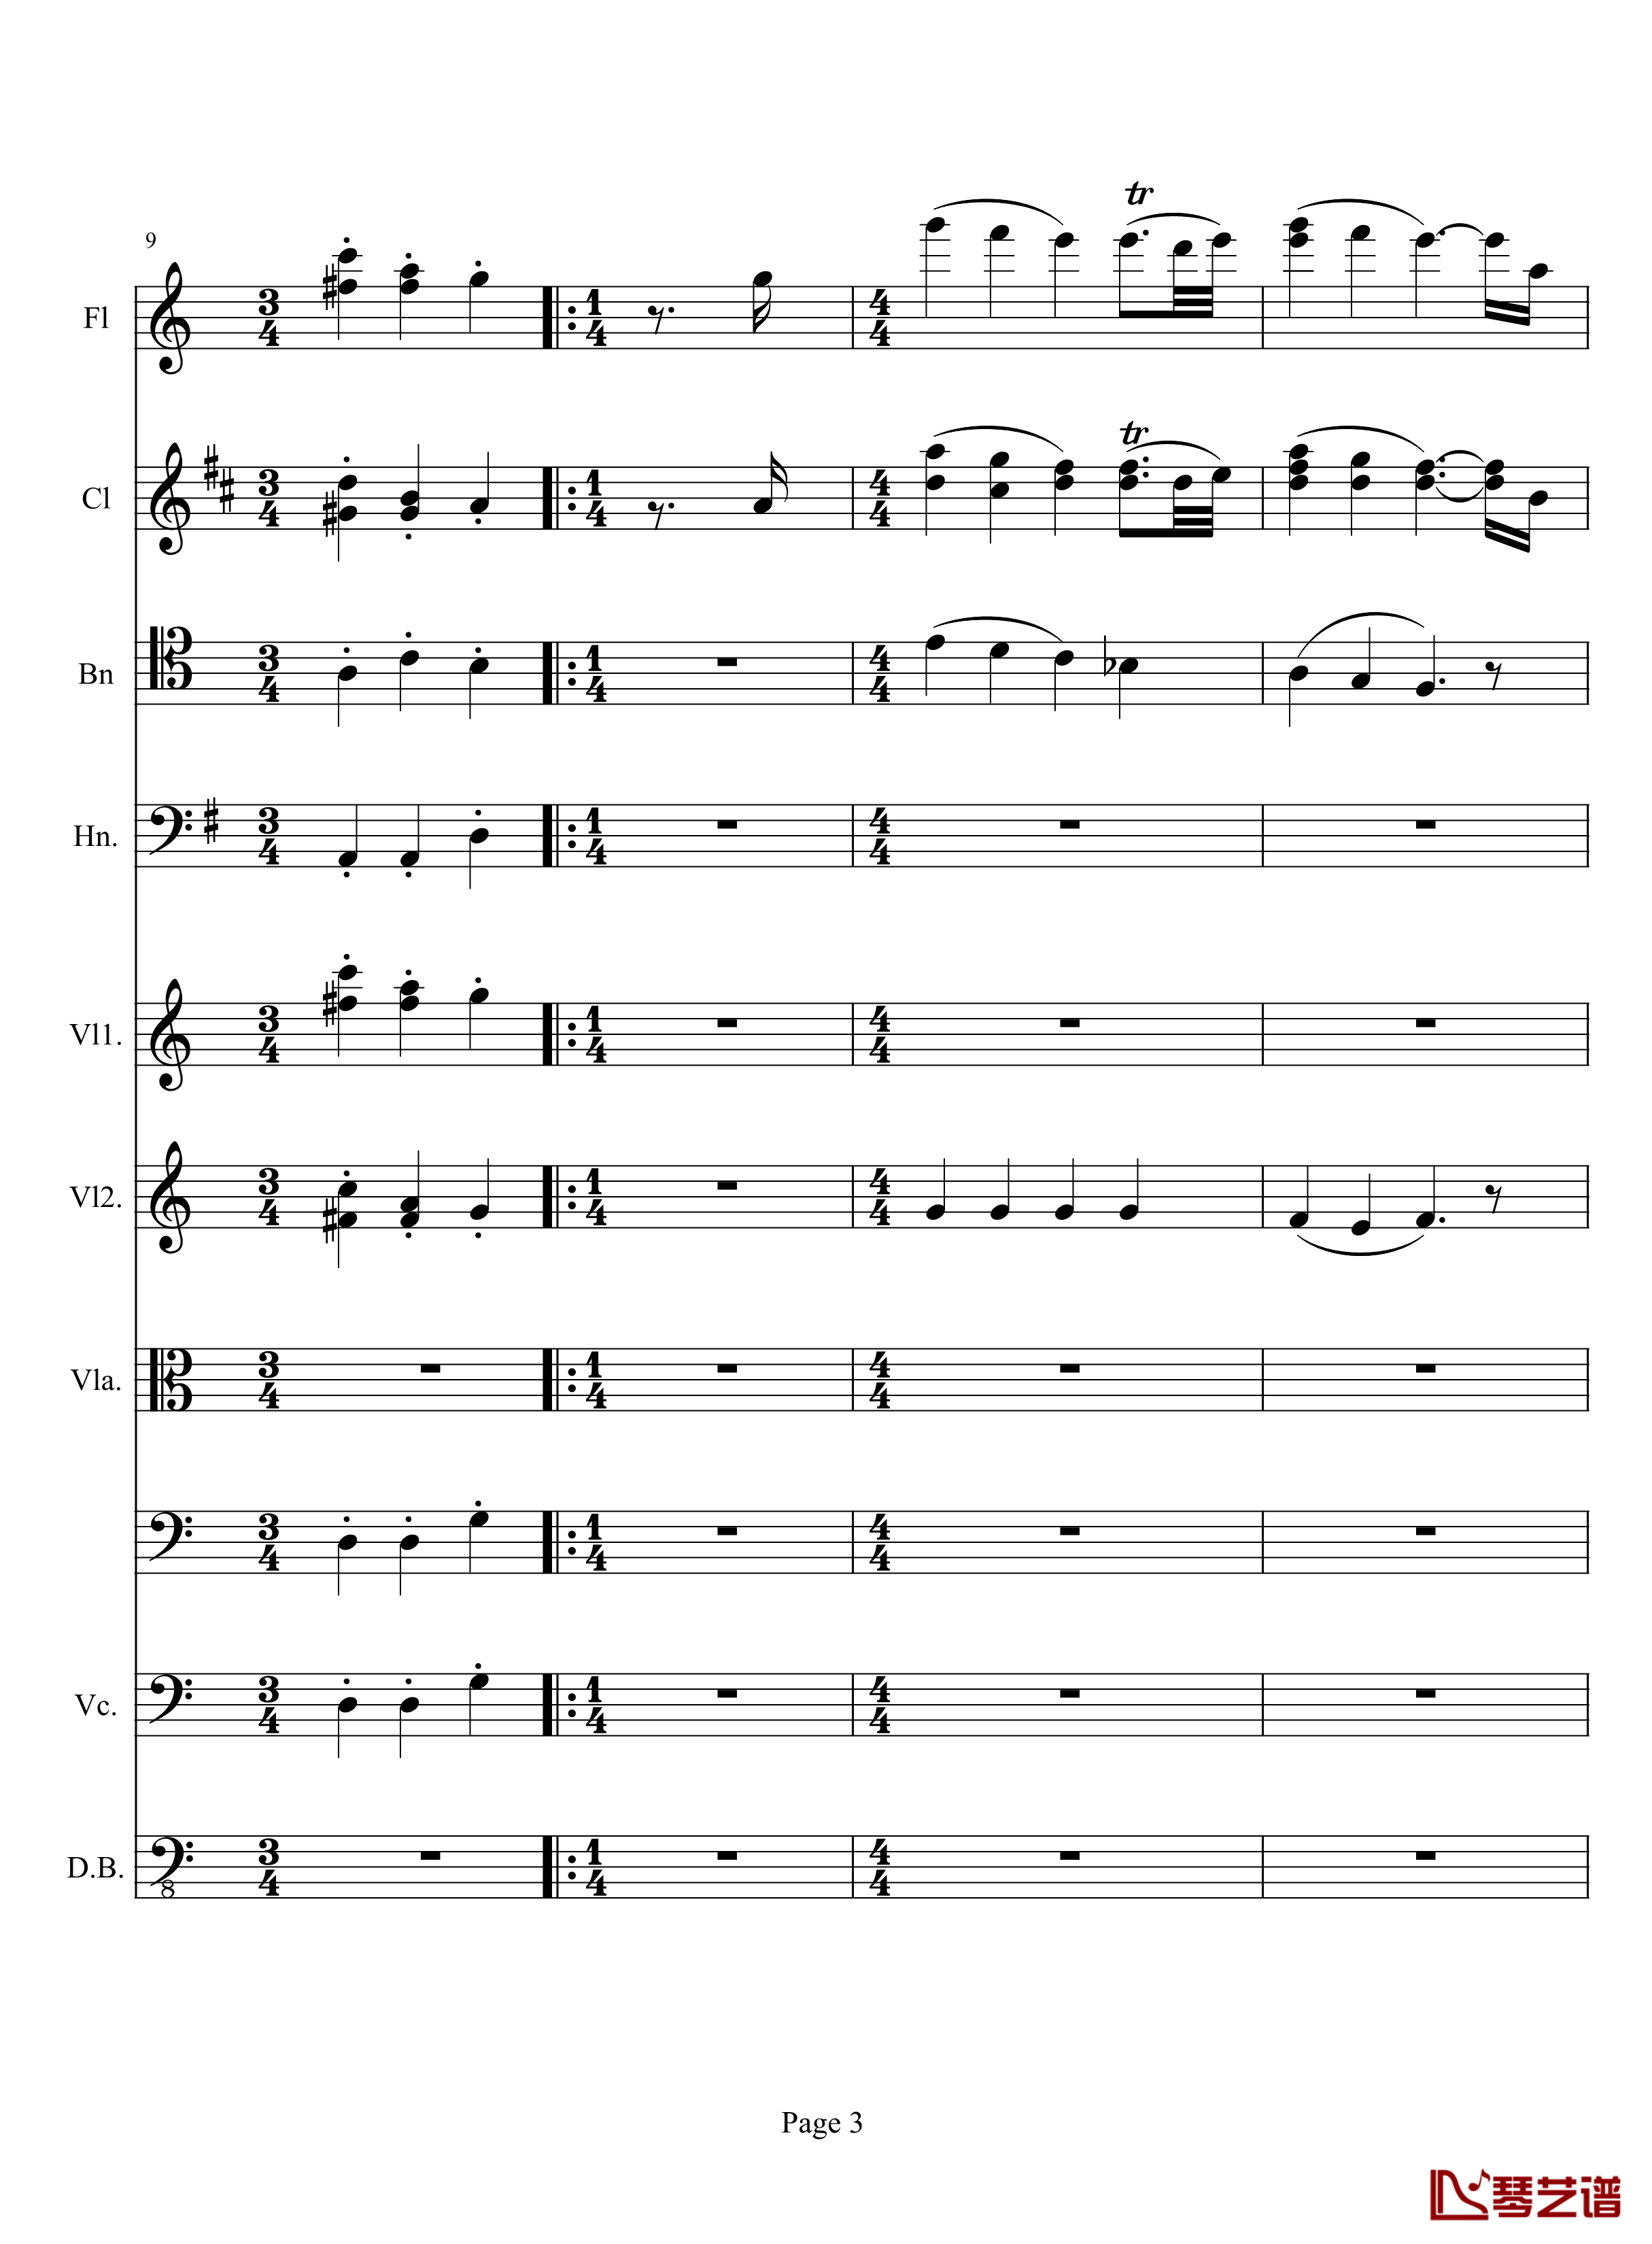 奏鸣曲之交响钢琴谱-第10首-2-贝多芬-beethoven